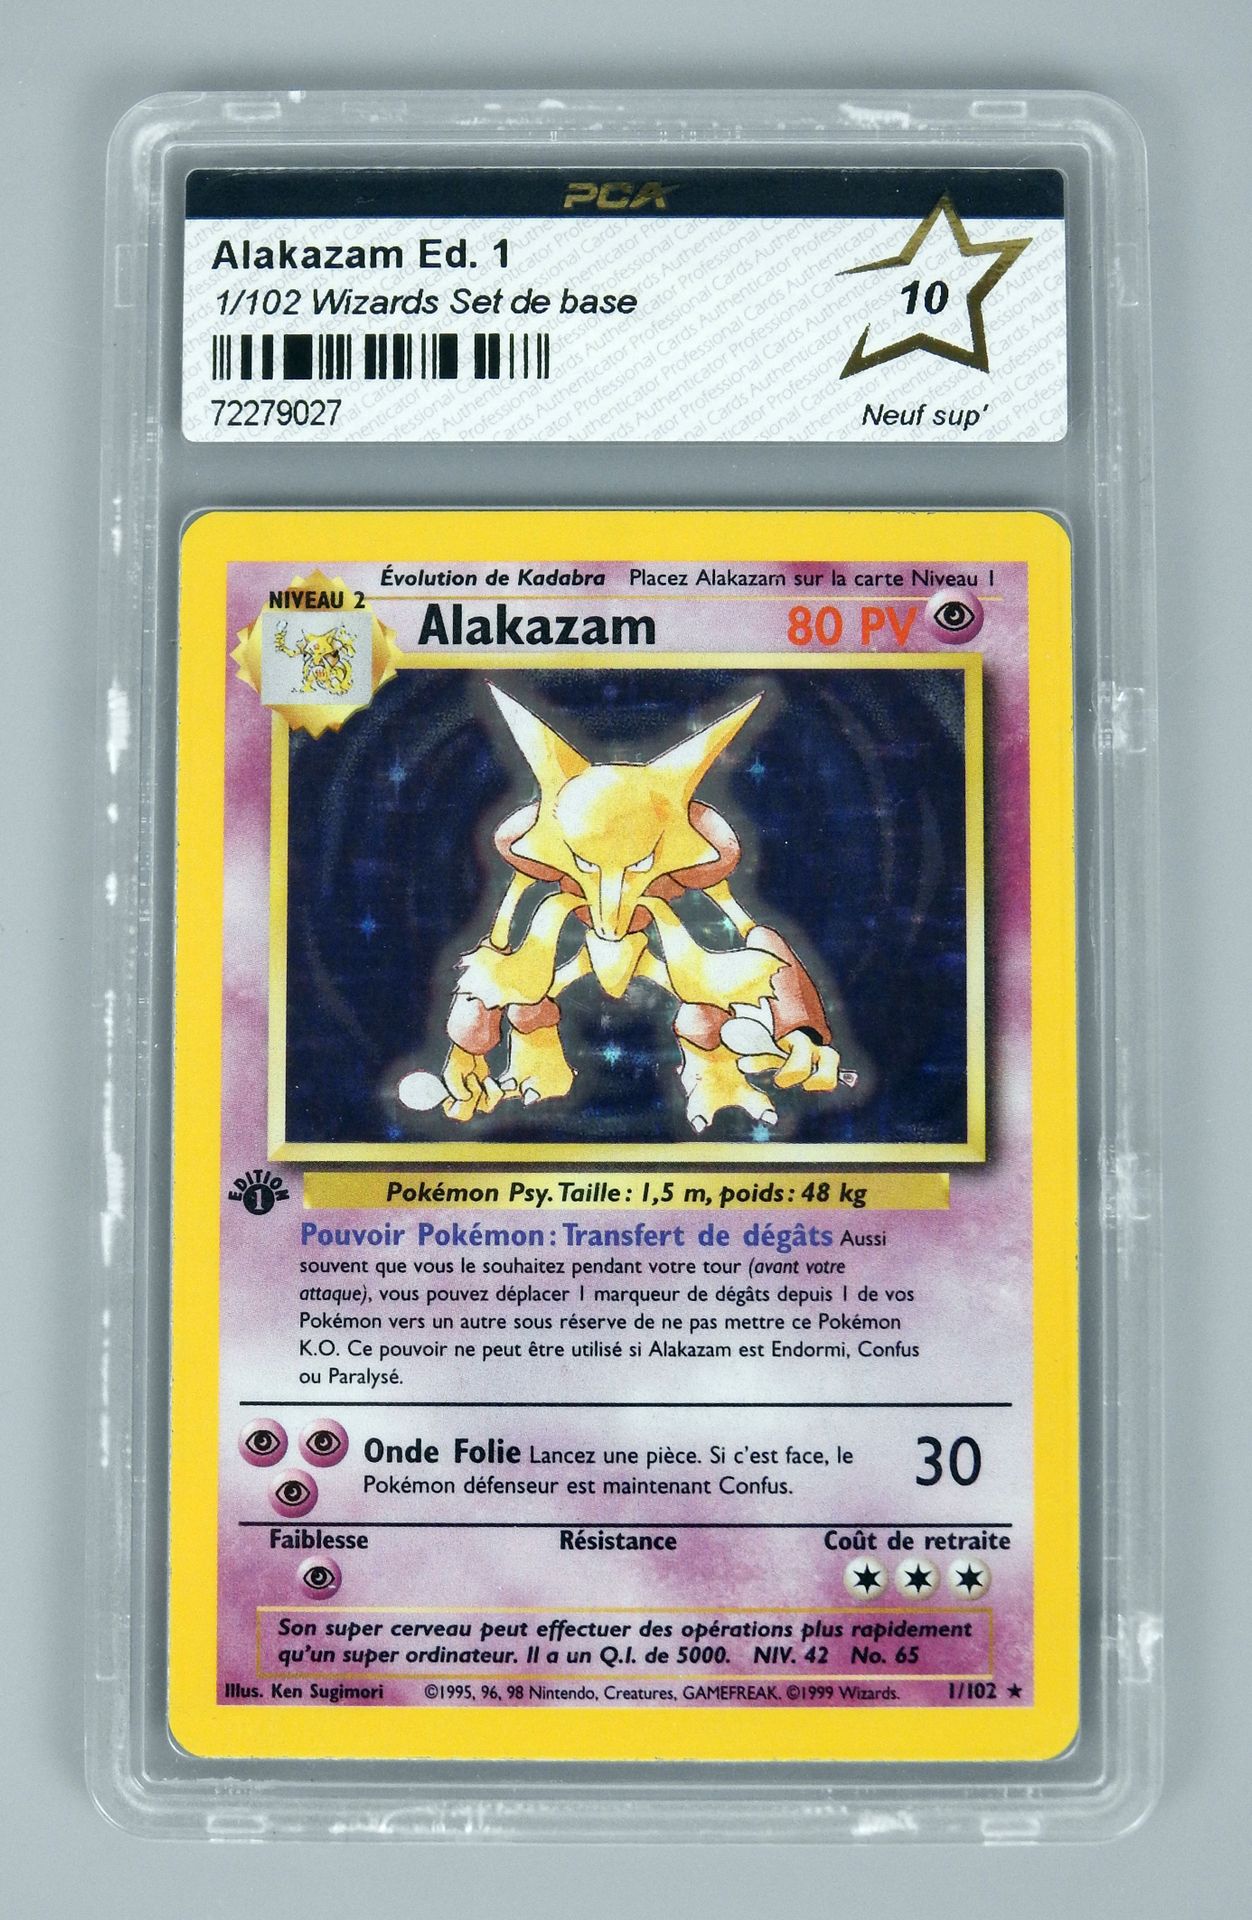 Null 
ALAKAZAM Ed 1

Wizards Block Basic Set 1/102

Pokémon card rated PCA 10/10